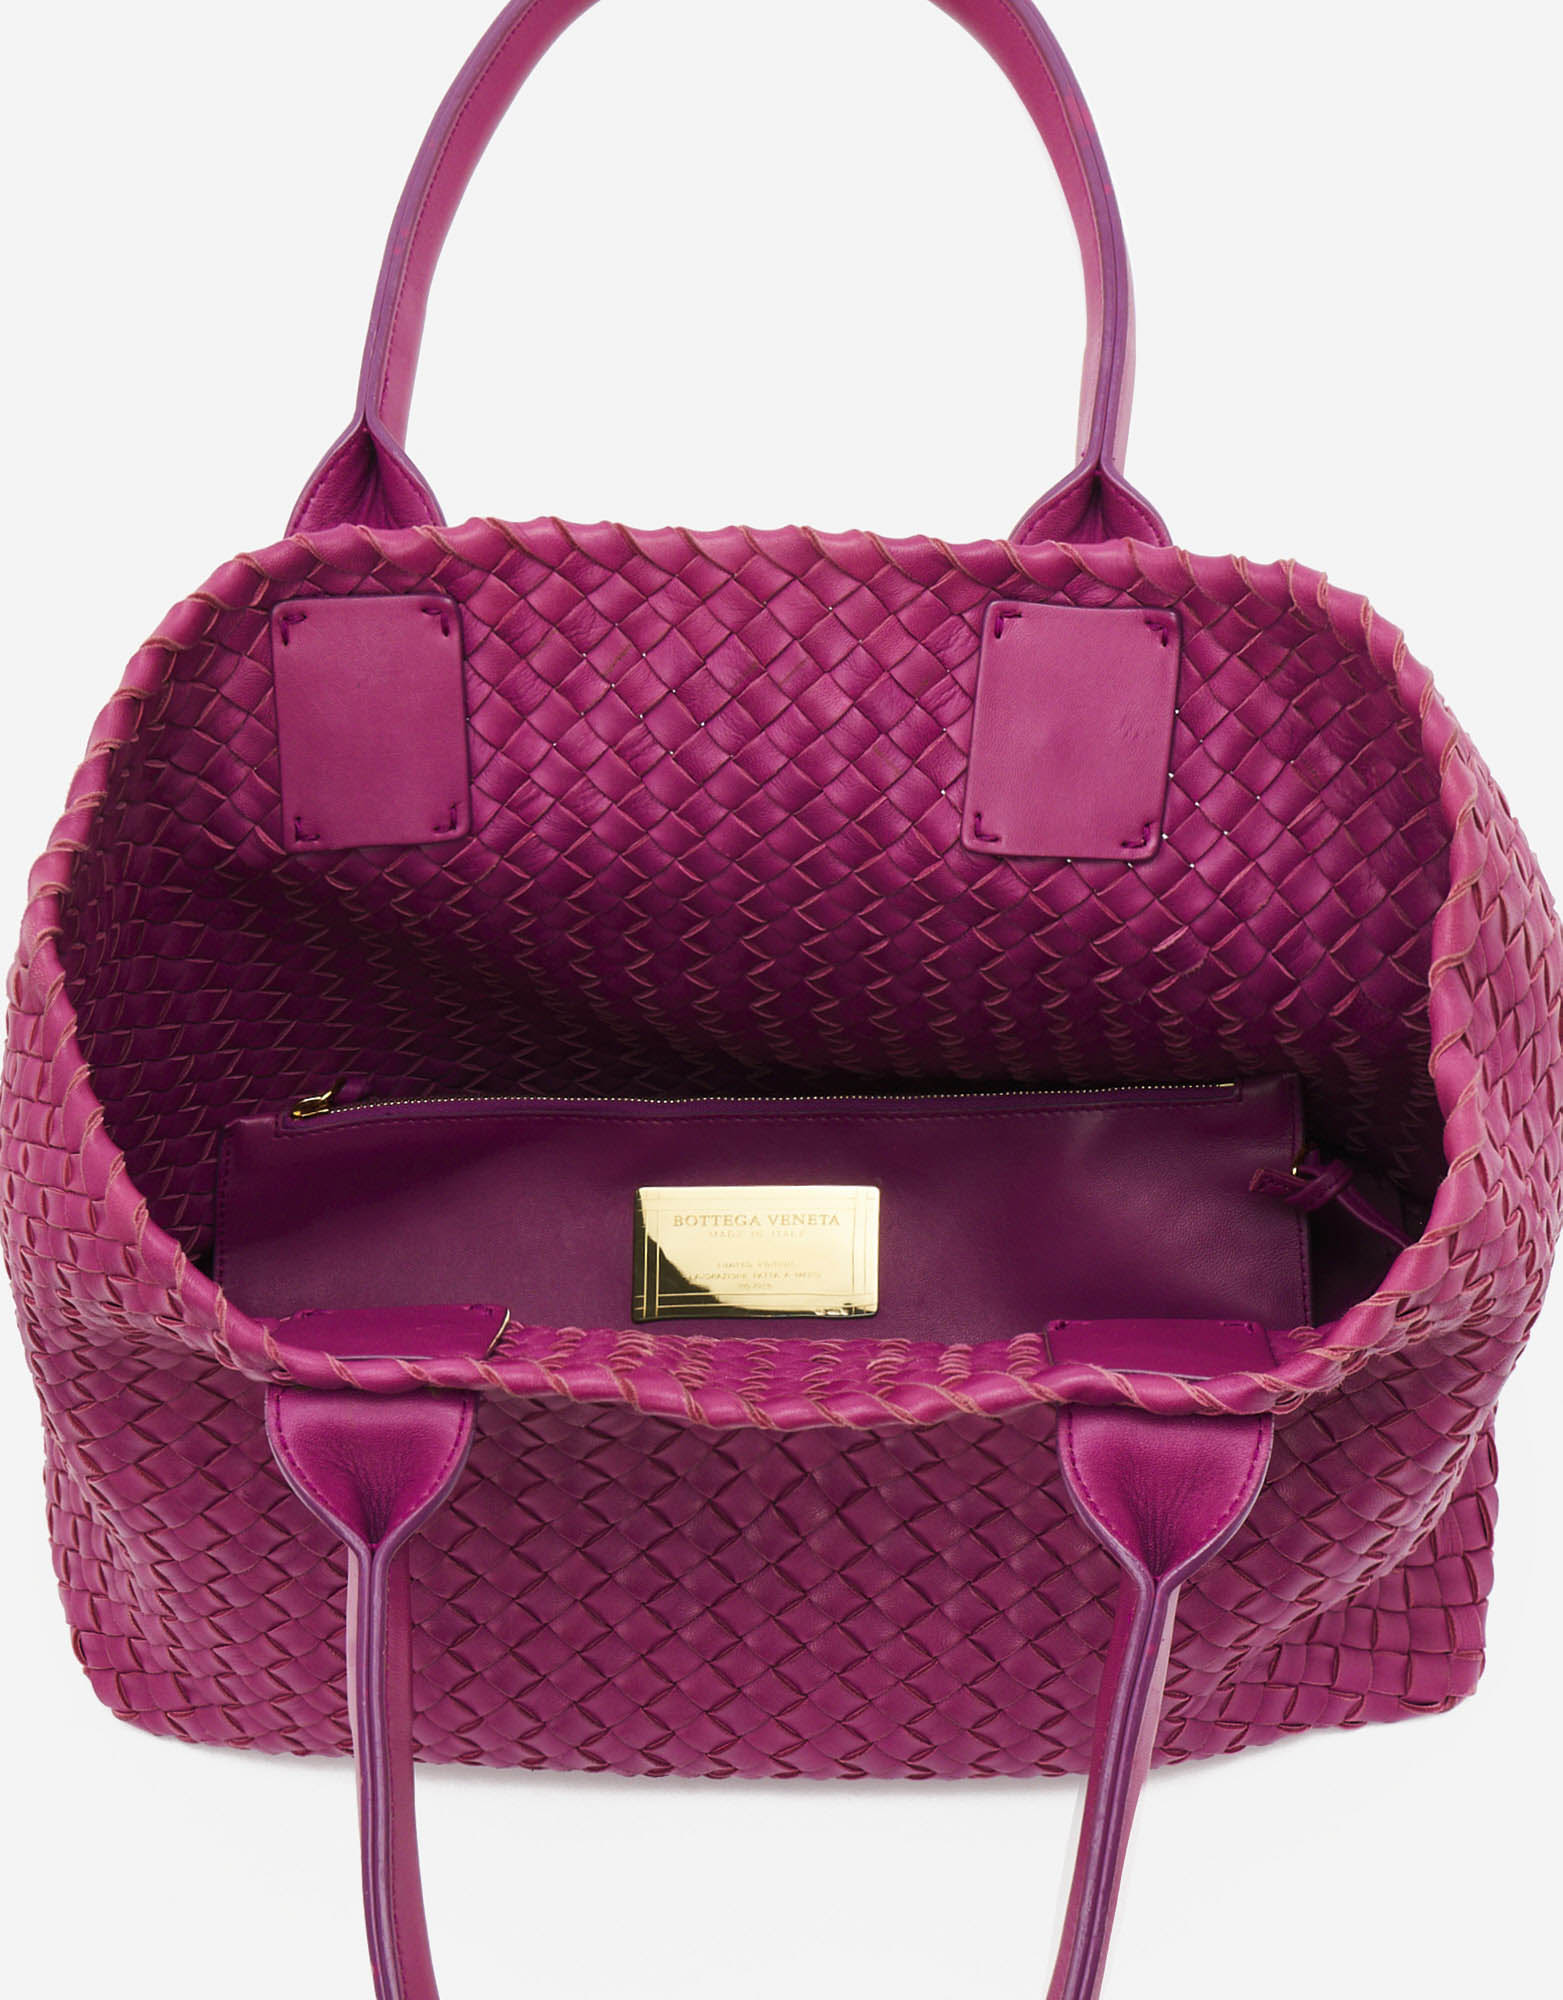 Sac Bottega Veneta d'occasion Cabat Small Intrecciato Purple Pink, Violet | Vendez votre sac de créateur sur Saclab.com